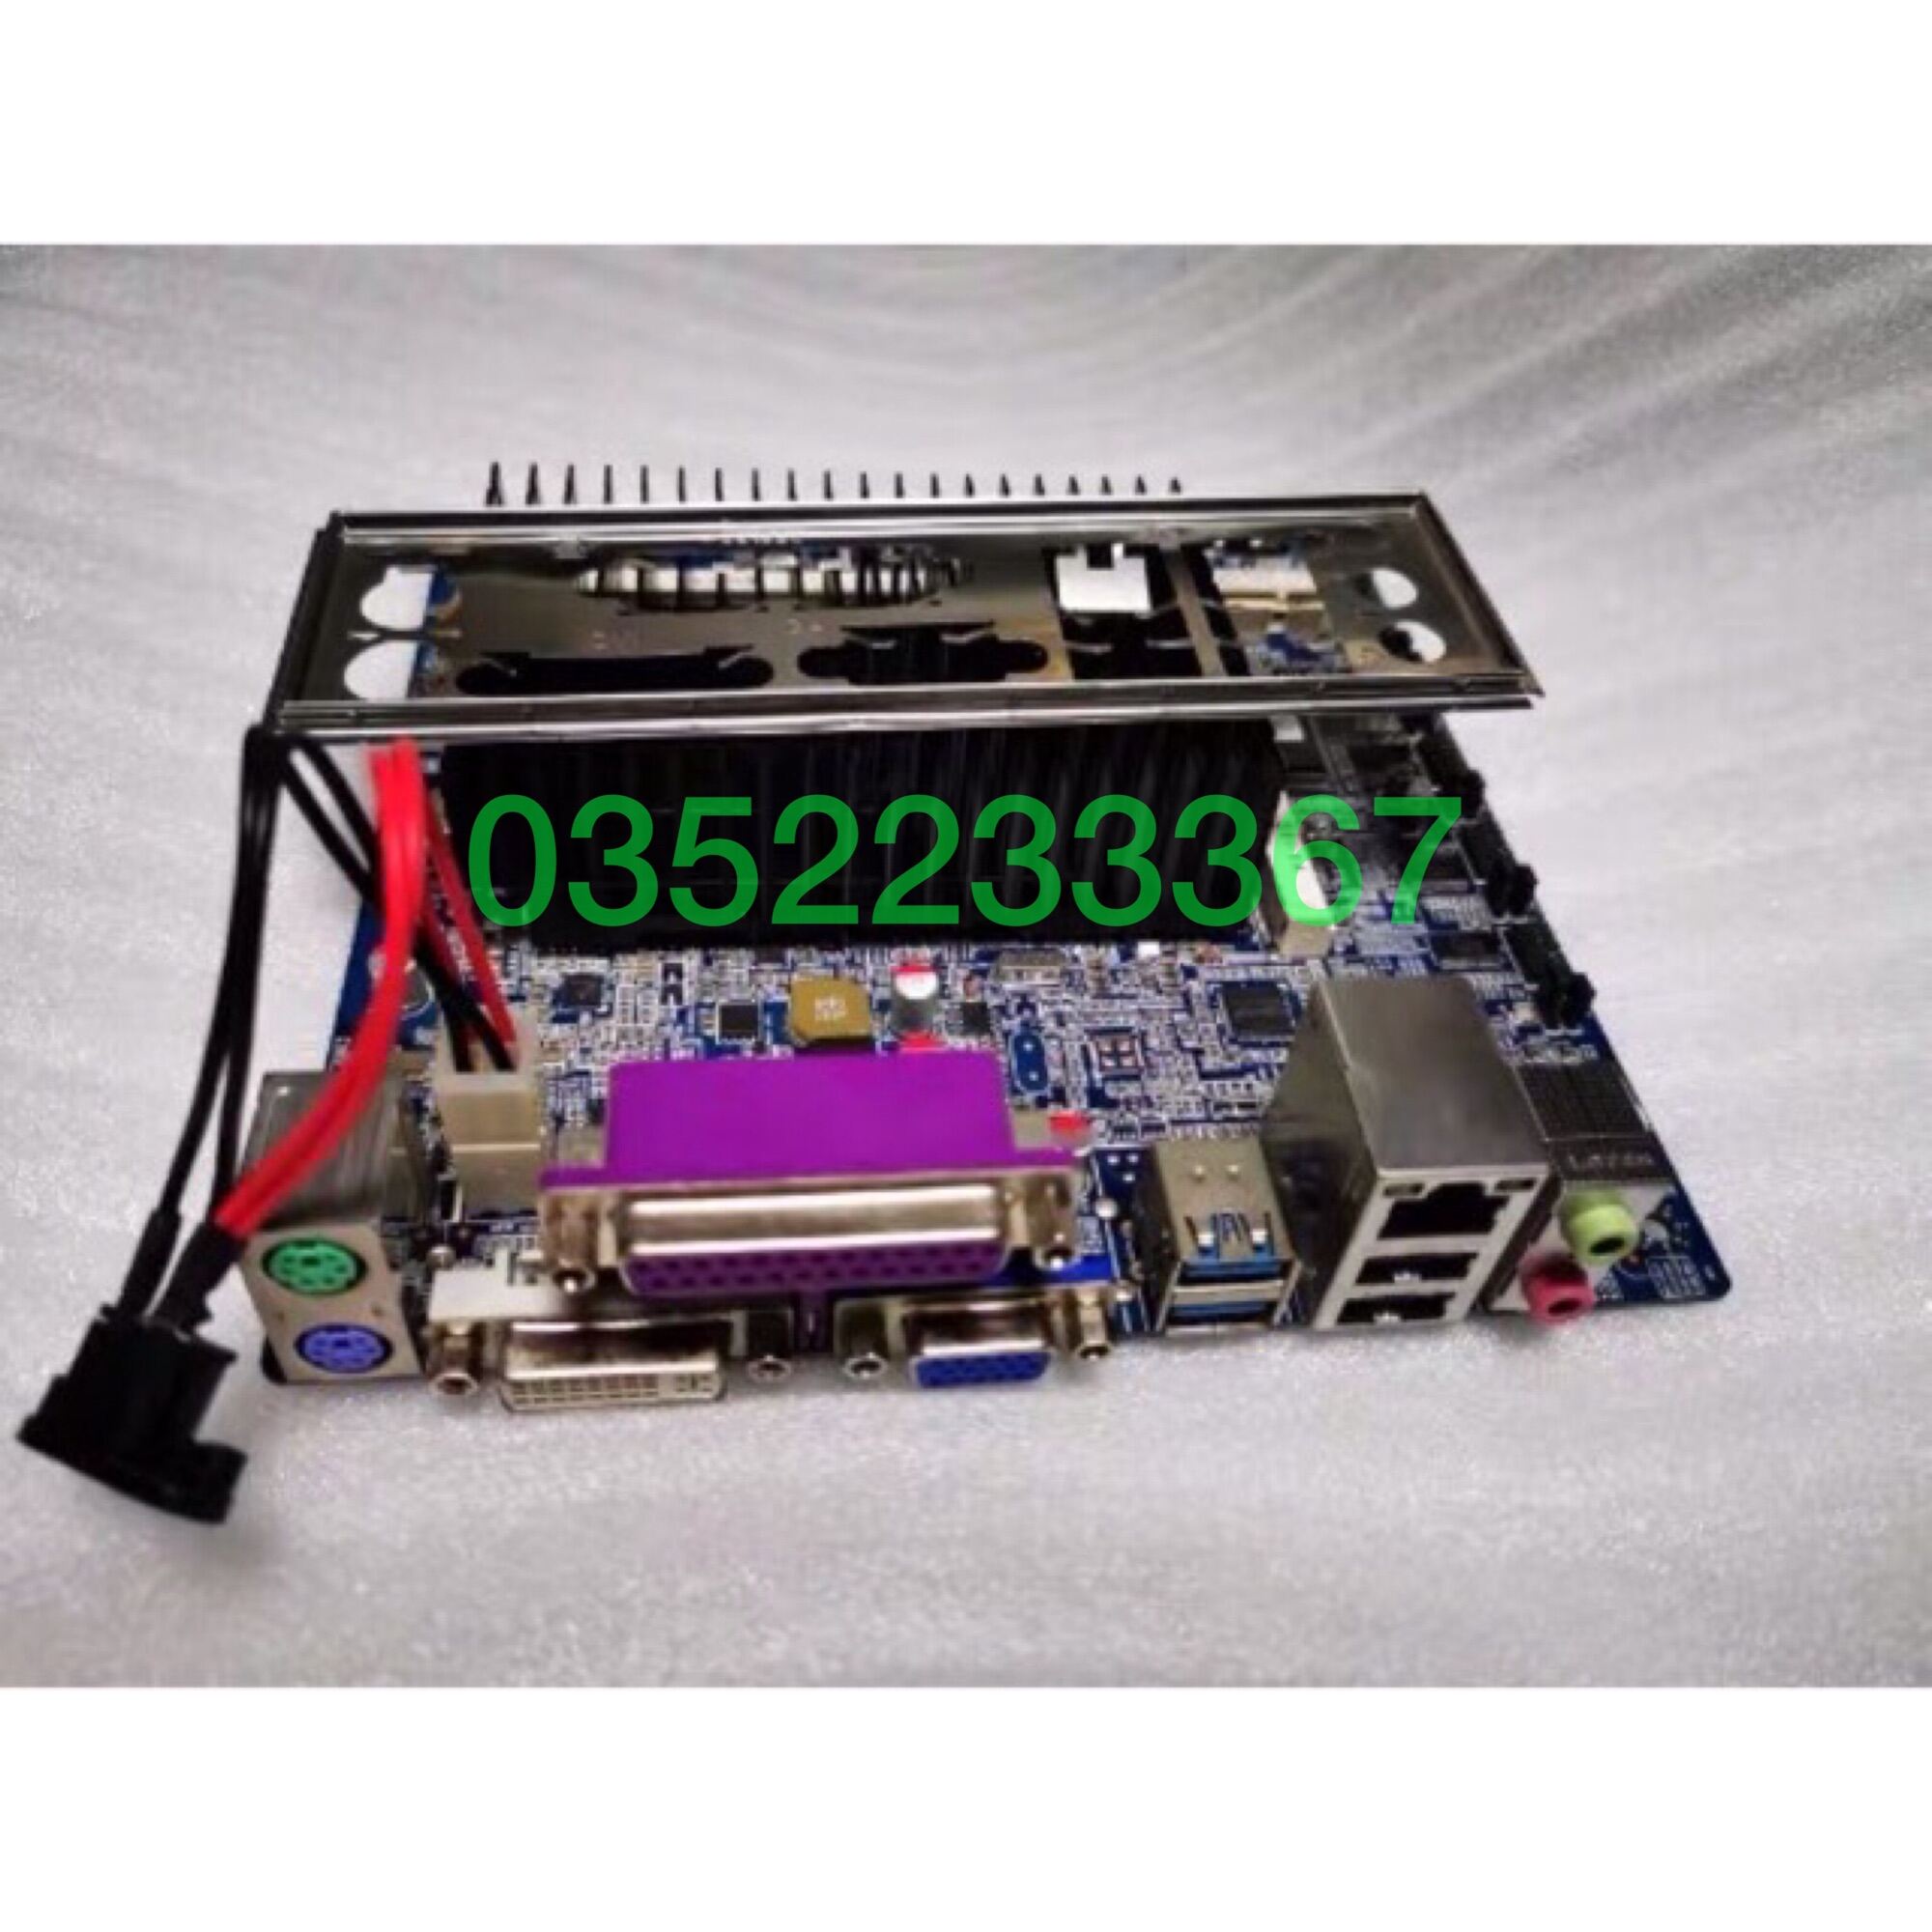 Bảng giá Main ITX, Audio 17*17cm, chíp dán D2550 1.86Ghz(siêu tiết kiệm điện) - K Ram - K SSD Phong Vũ